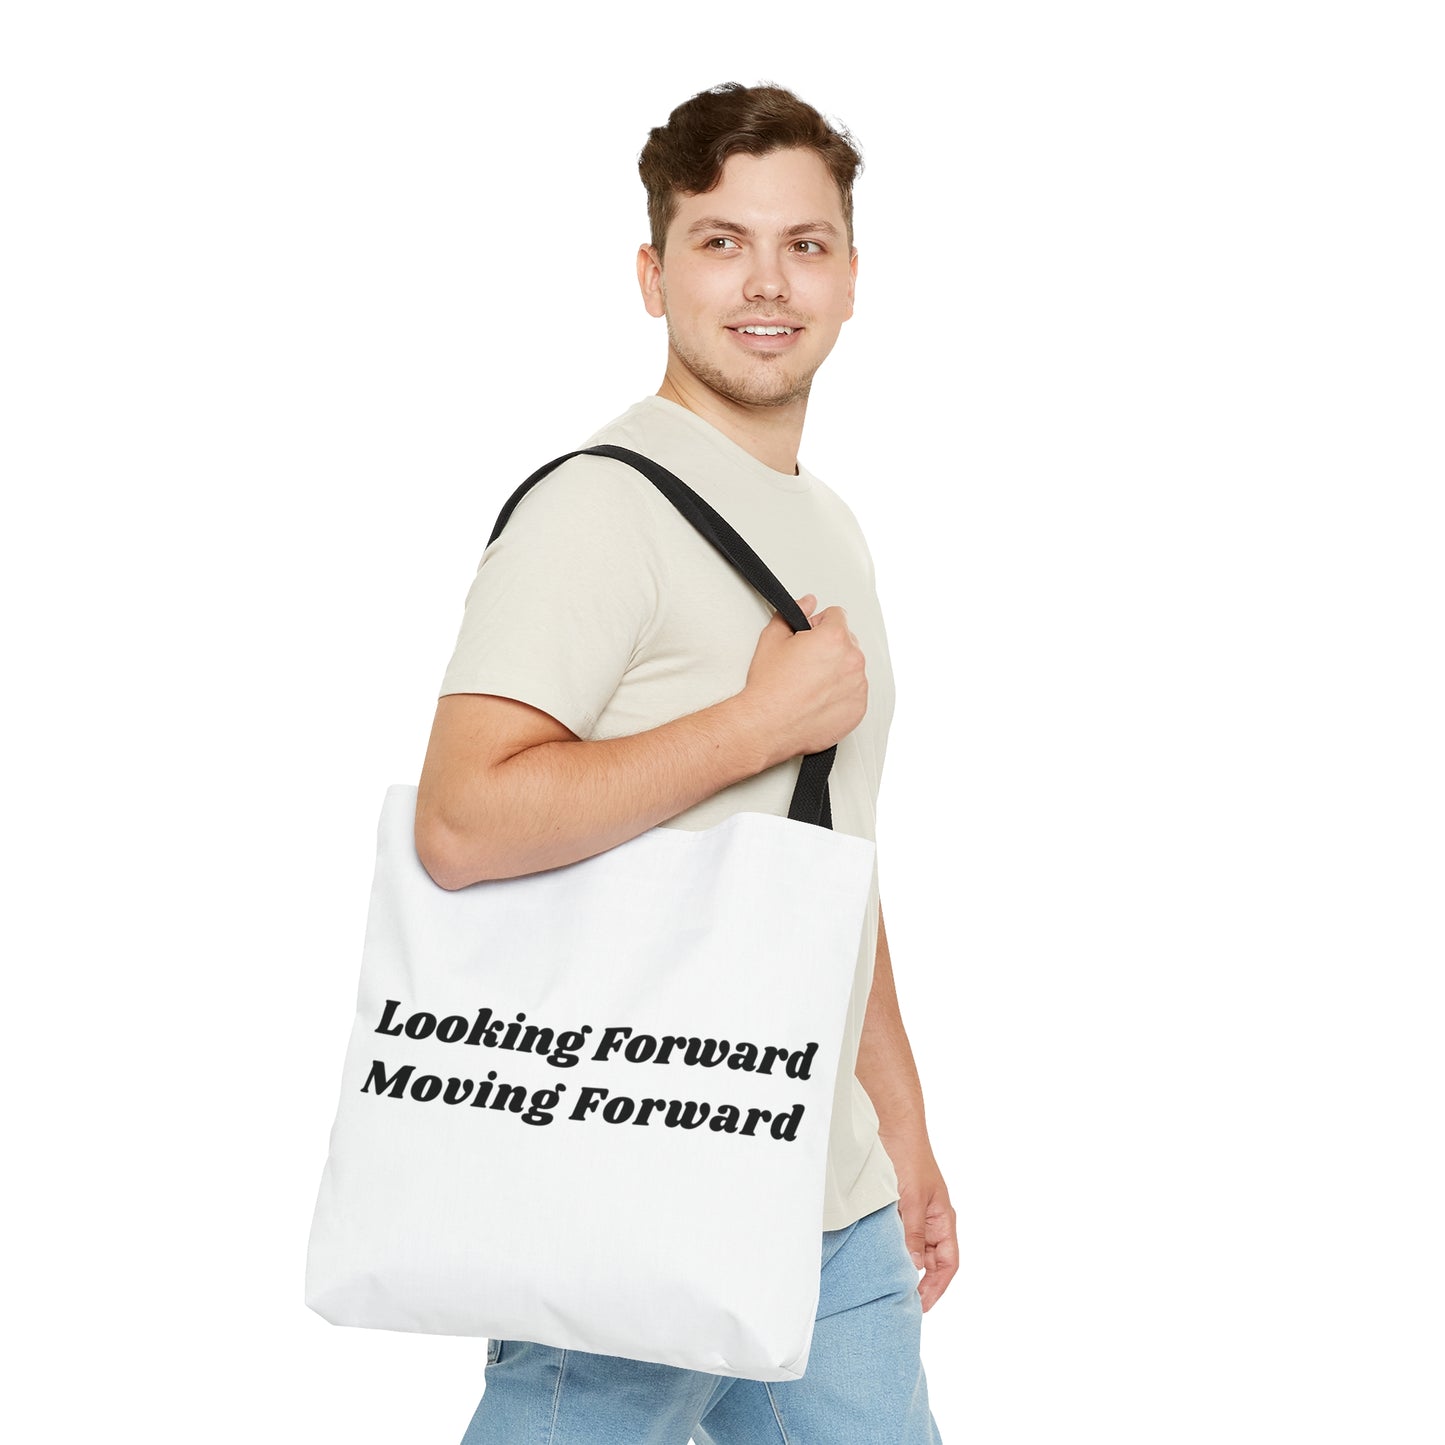 Looking Forward - Moving Forward Tote Bag